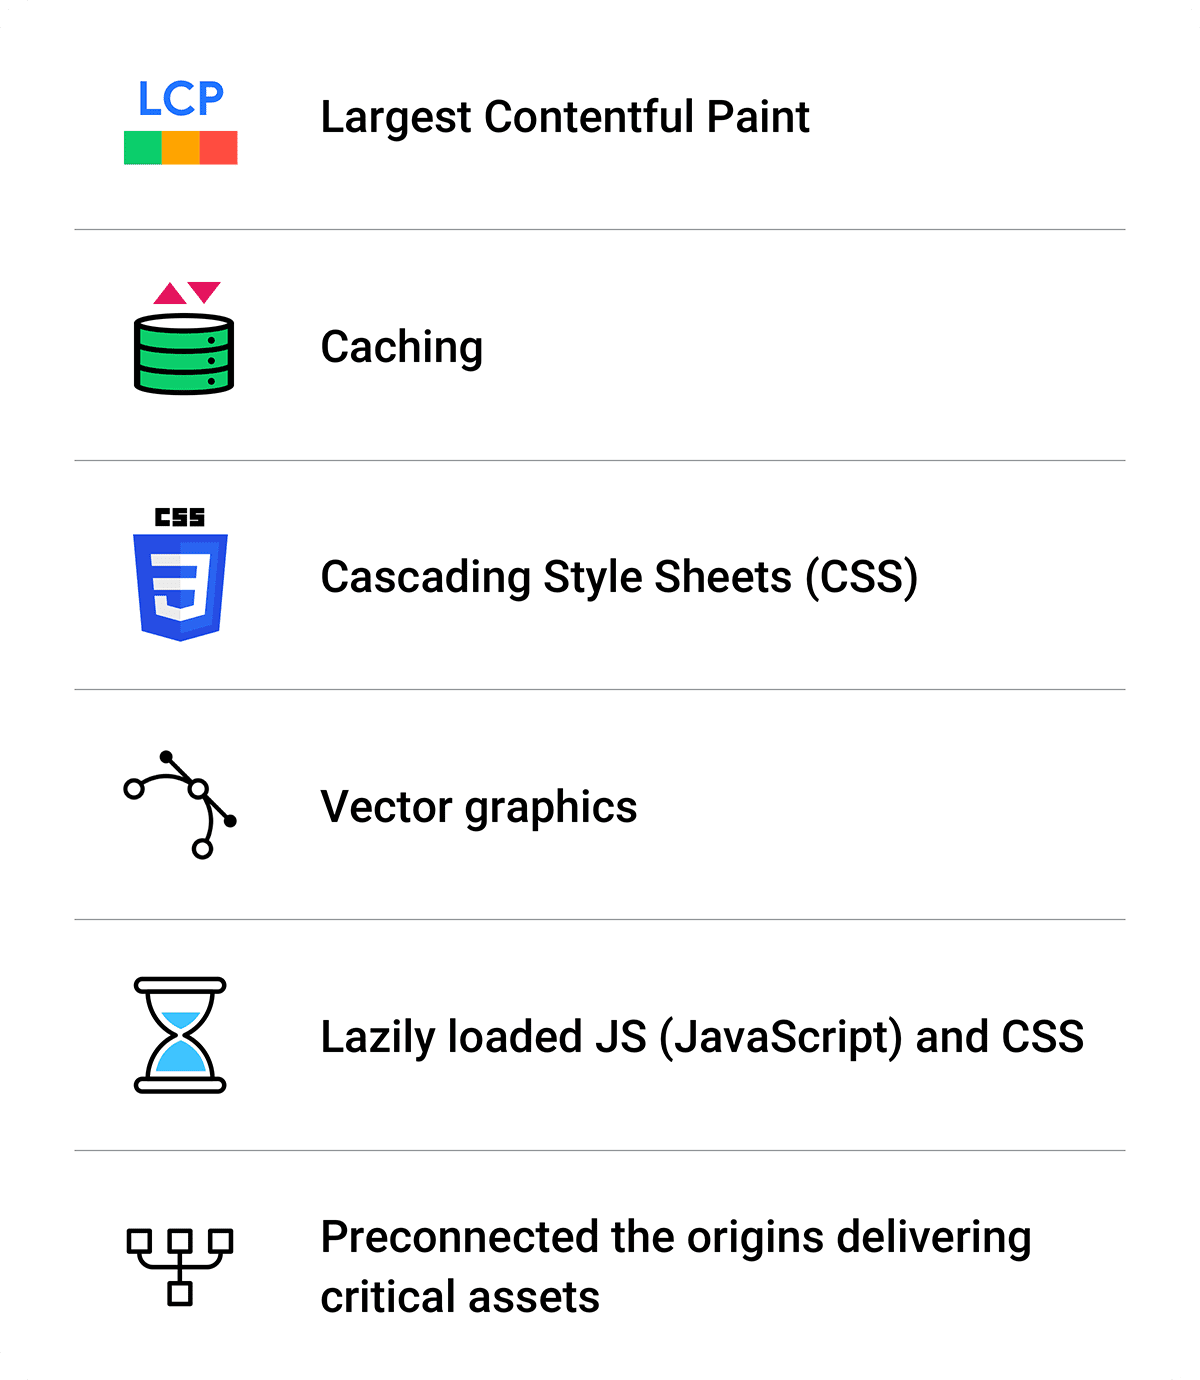 Un riepilogo delle ottimizzazioni: Largest Contentful Paint, Caching, CSS, grafica vettoriale, JS e CSS con caricamento lento, preconnessione.